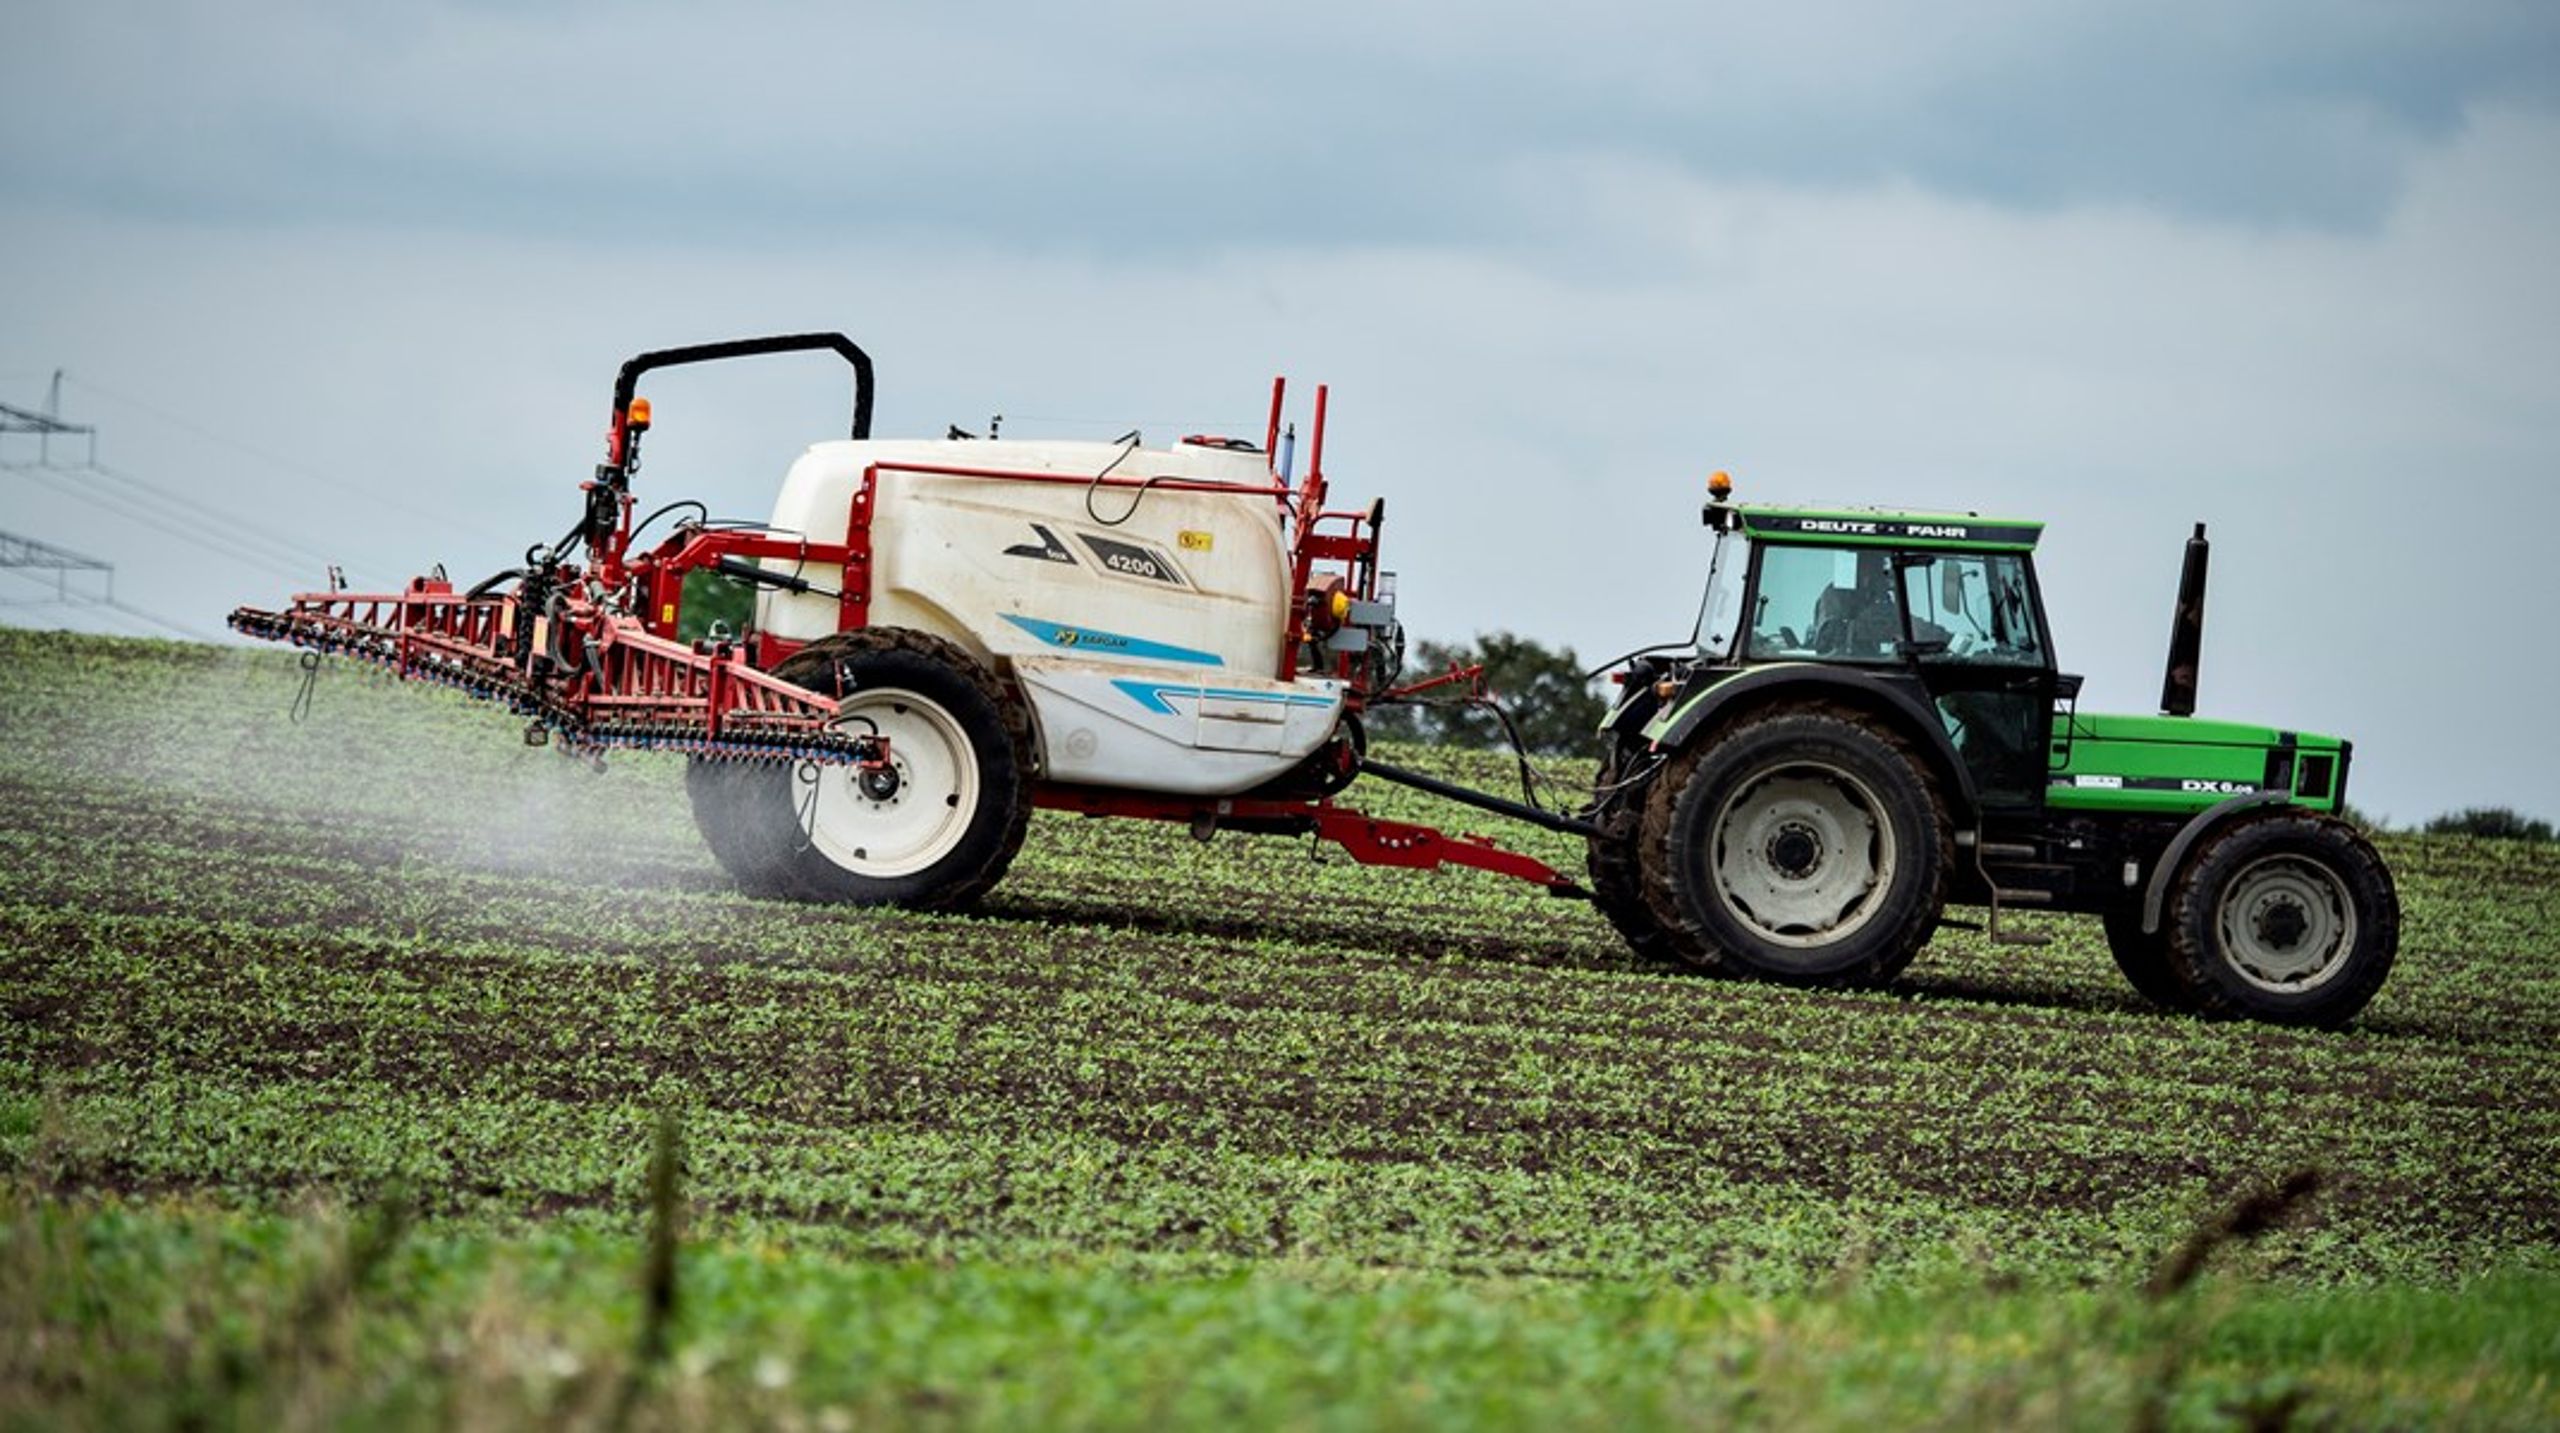 Danmark
har udfordringer med pesticider og kemiske forureninger i grundvandet.